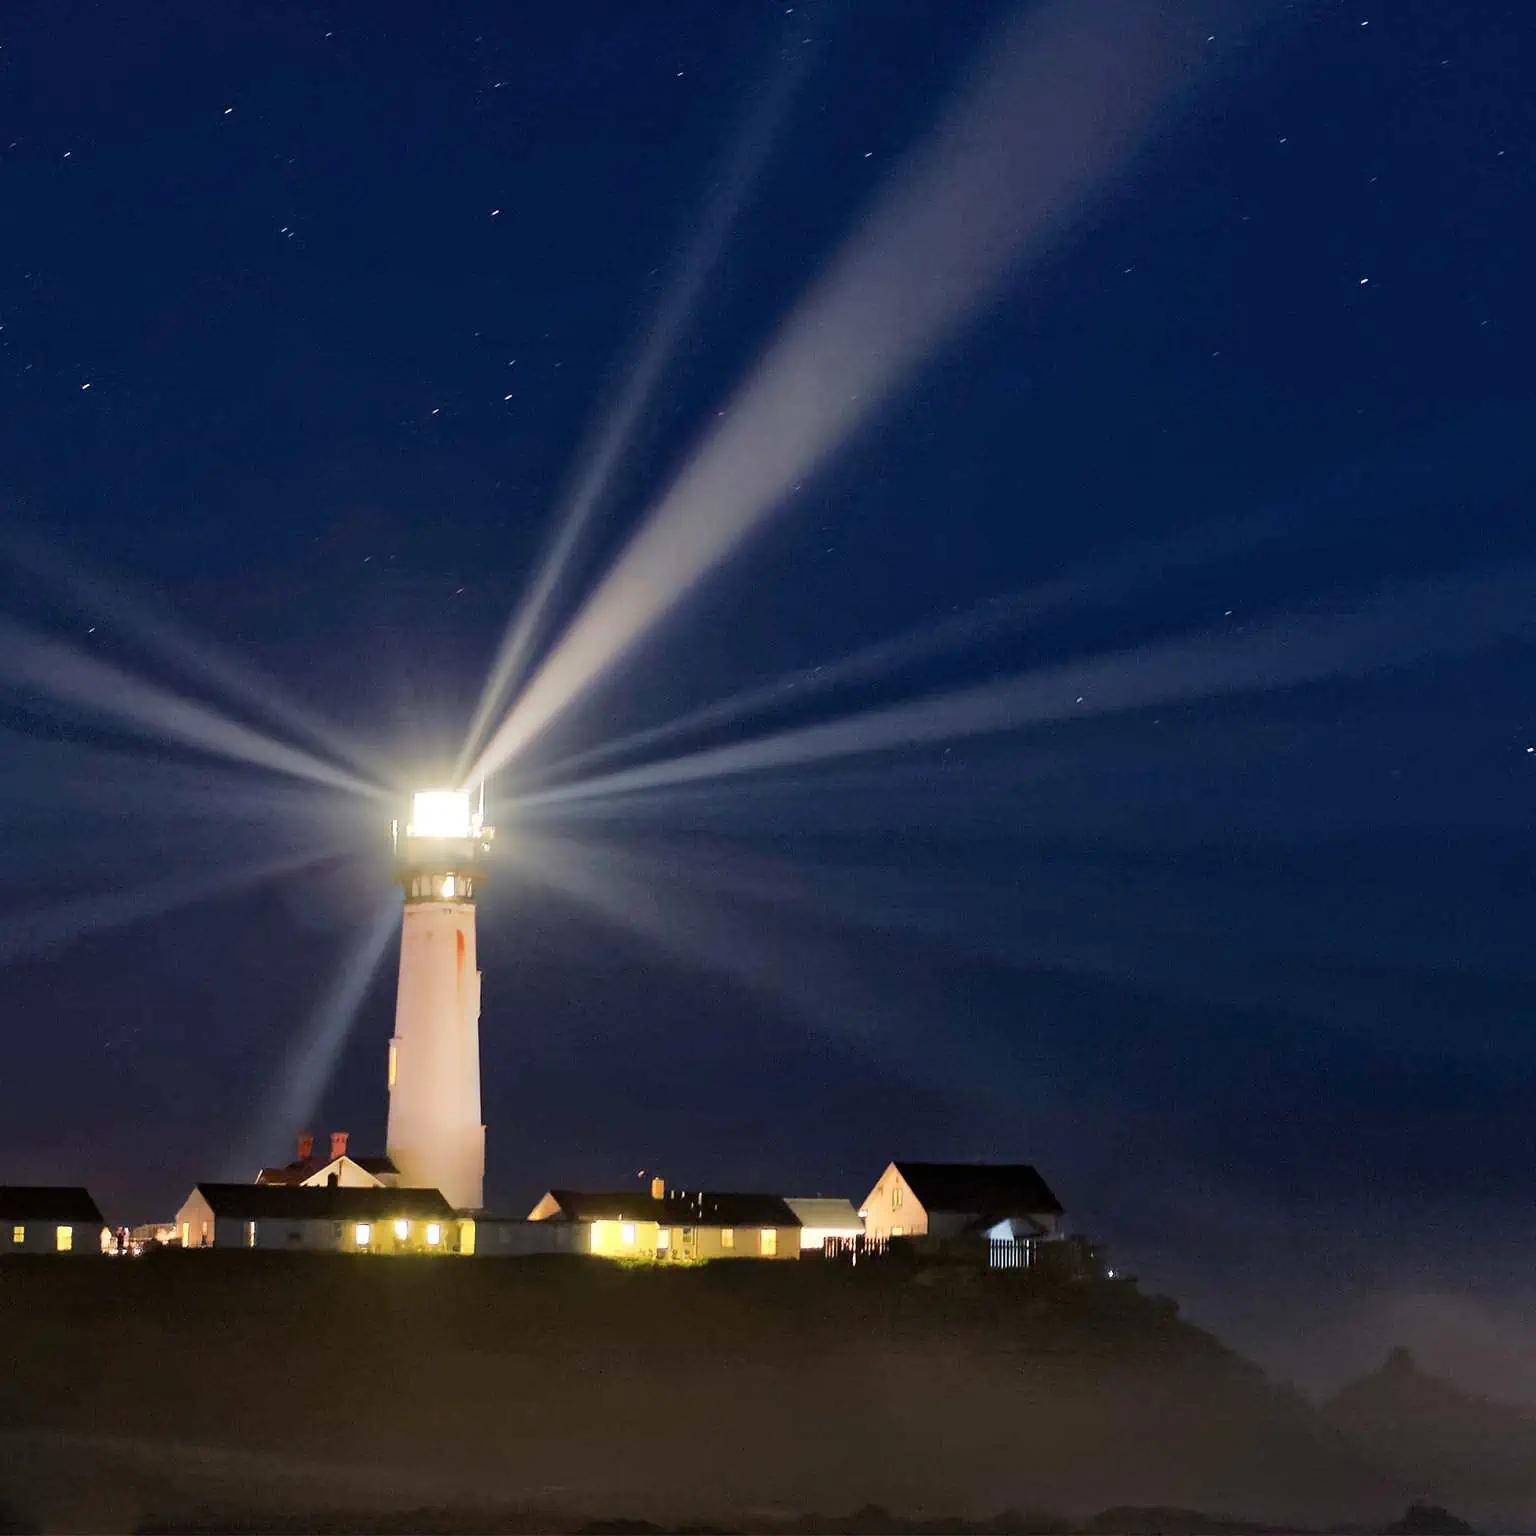 Phare - lighthouse - beacon of light